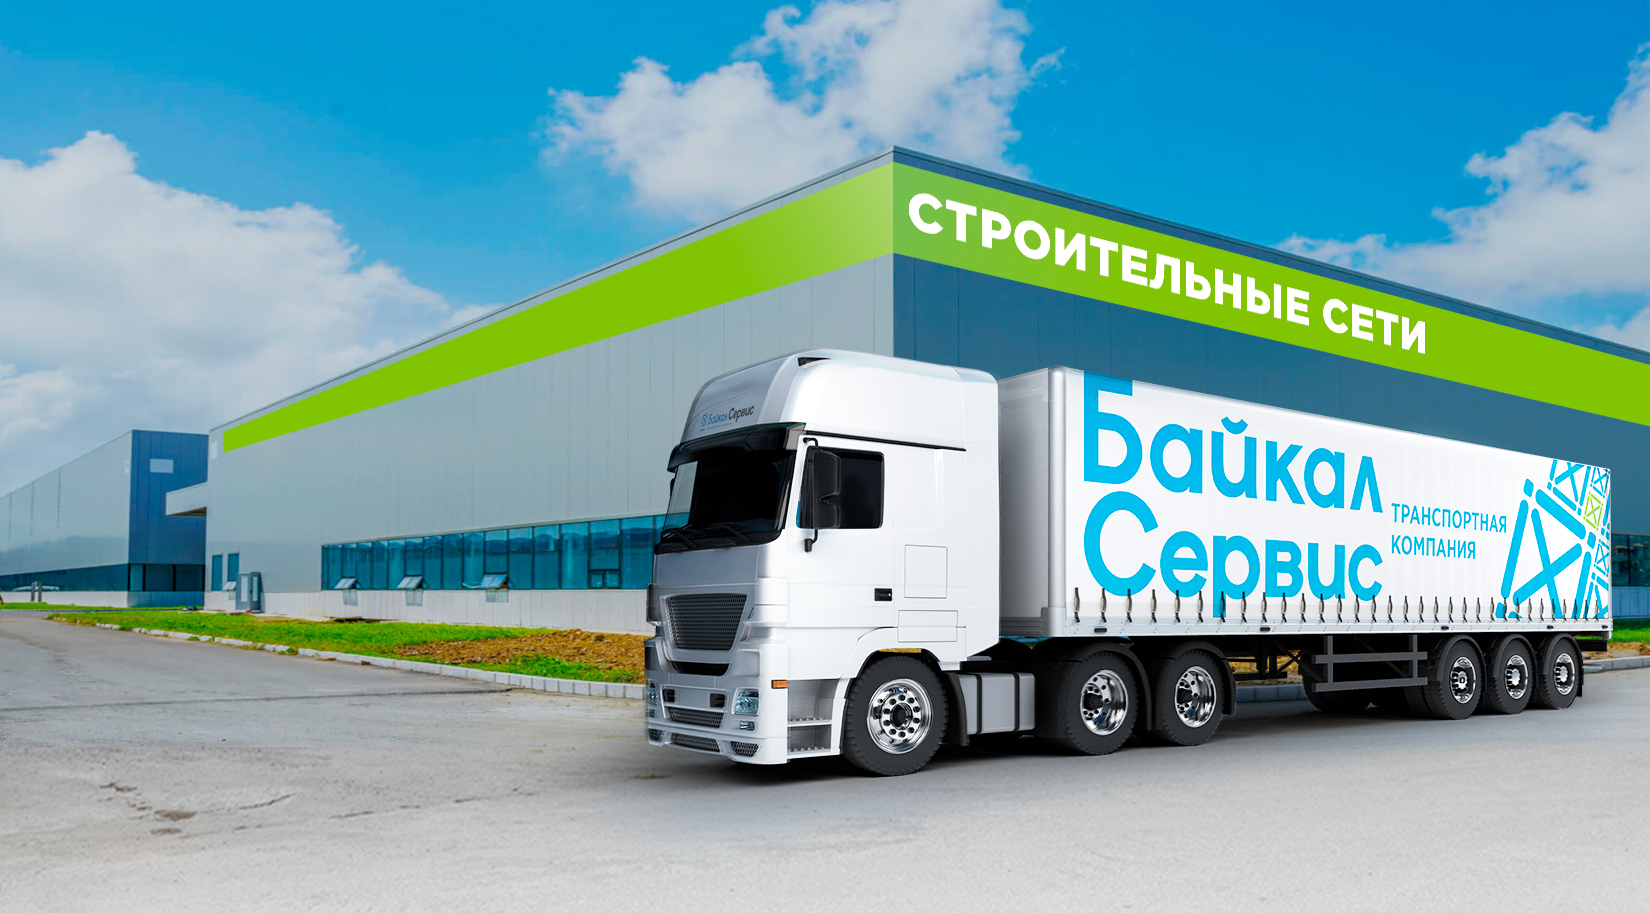 Байкал Сервис предлагает клиентам скидку 20% при доставке в строительные сети